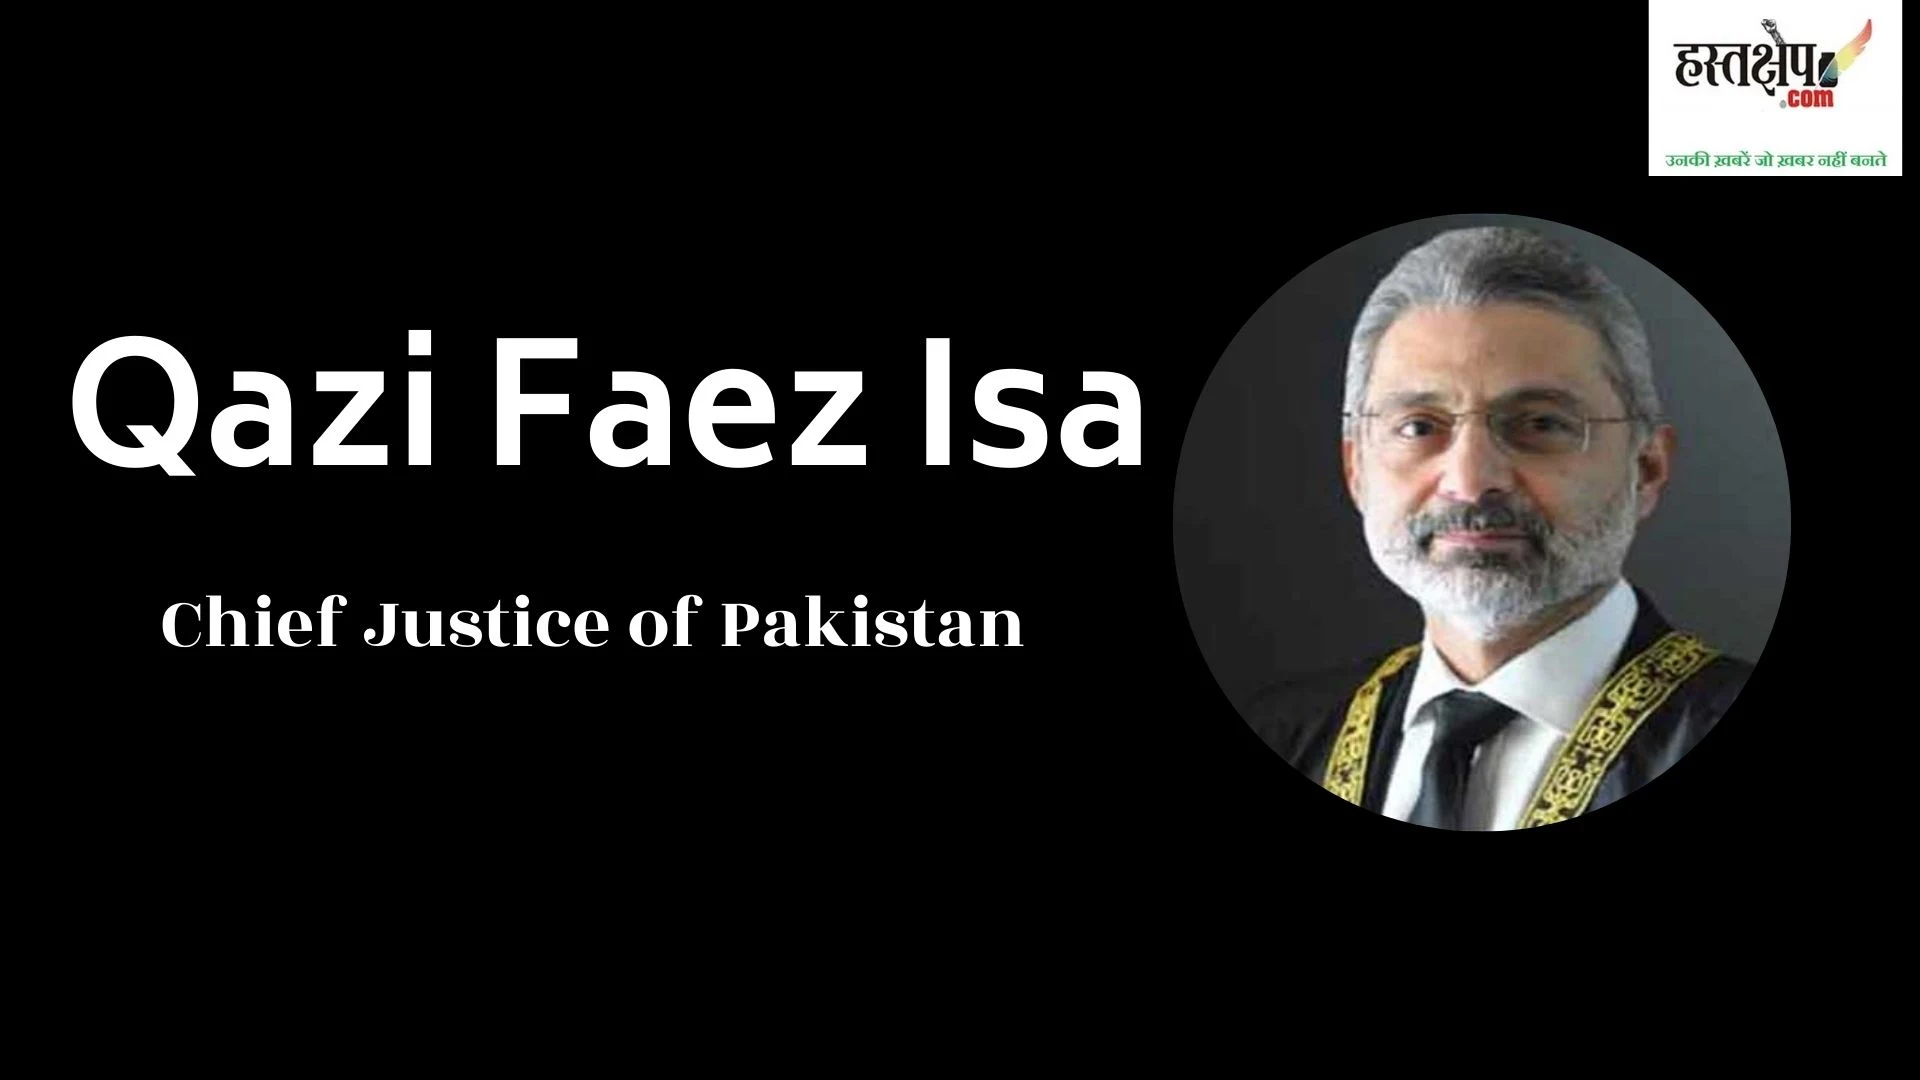 What did Justice Katju say about Qazi Faez isa?